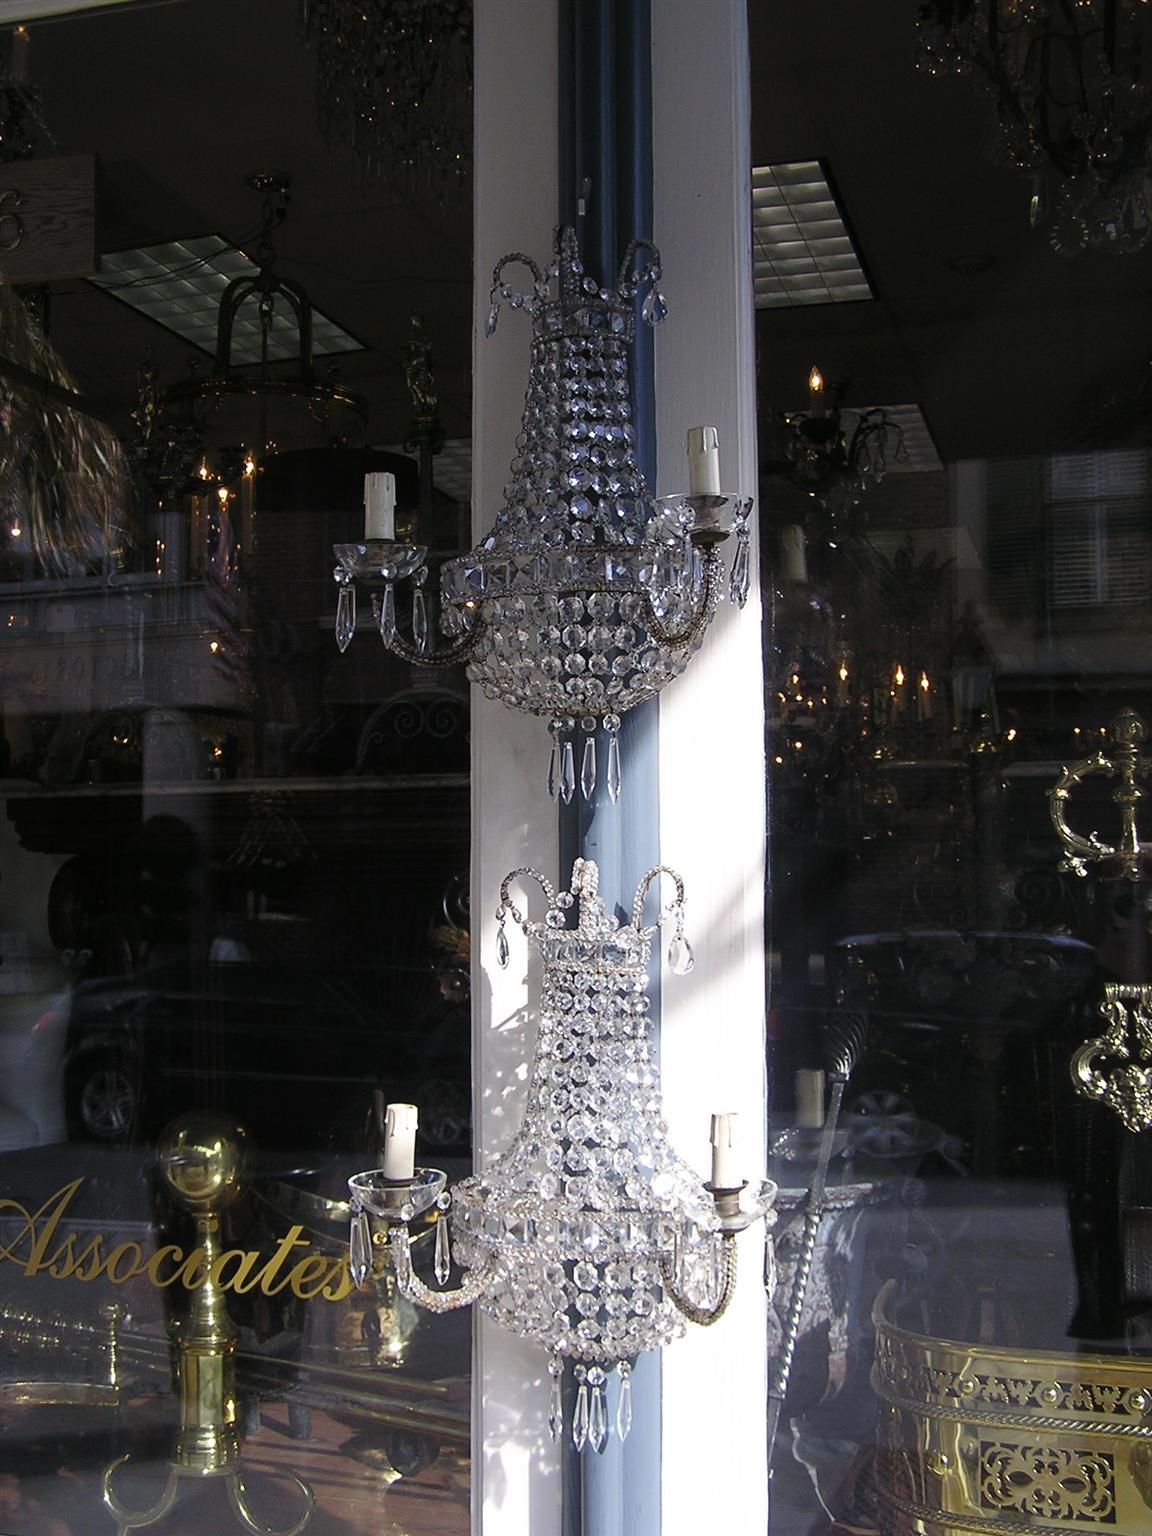 Zwei zweiarmige Wandleuchter aus französischer Bronze und Kristall mit dekorativer Perlenarbeit, kaskadenförmigen Prismen und originalen Kristallbobachen. Ursprünglich mit Kerzen betrieben, dann elektrifiziert, Mitte des 19. Jahrhunderts.